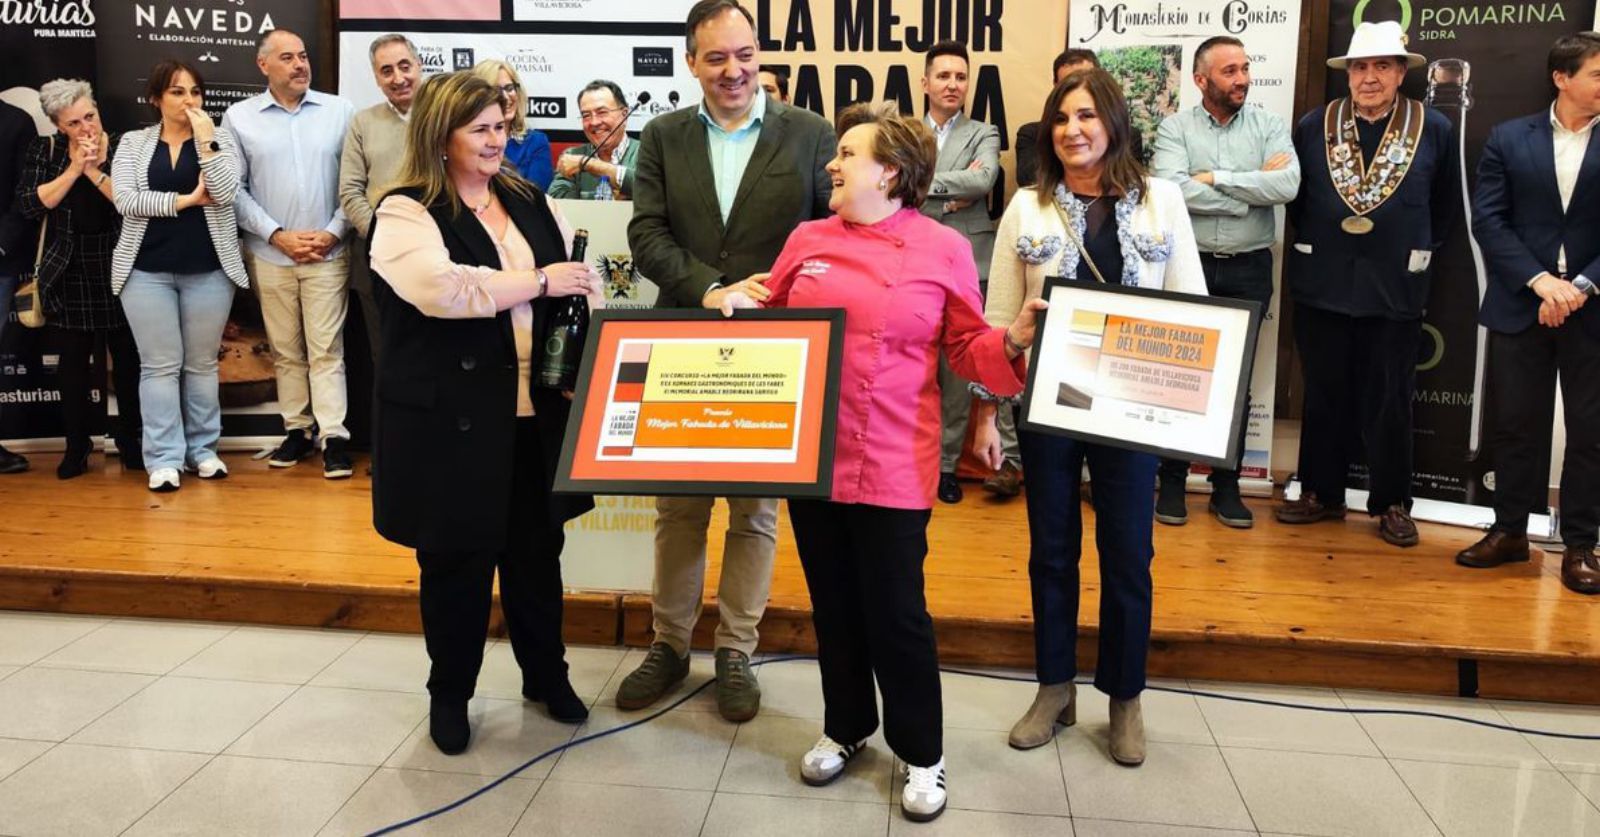 Paula Sopeña, recogiendo el premio a la mejor fabada de Villaviciosa de manos de María Cardín (El Gaitero), con el alcalde, Alejandro Vega, y Loly Tomas, viuda de Amable Bedriñana.